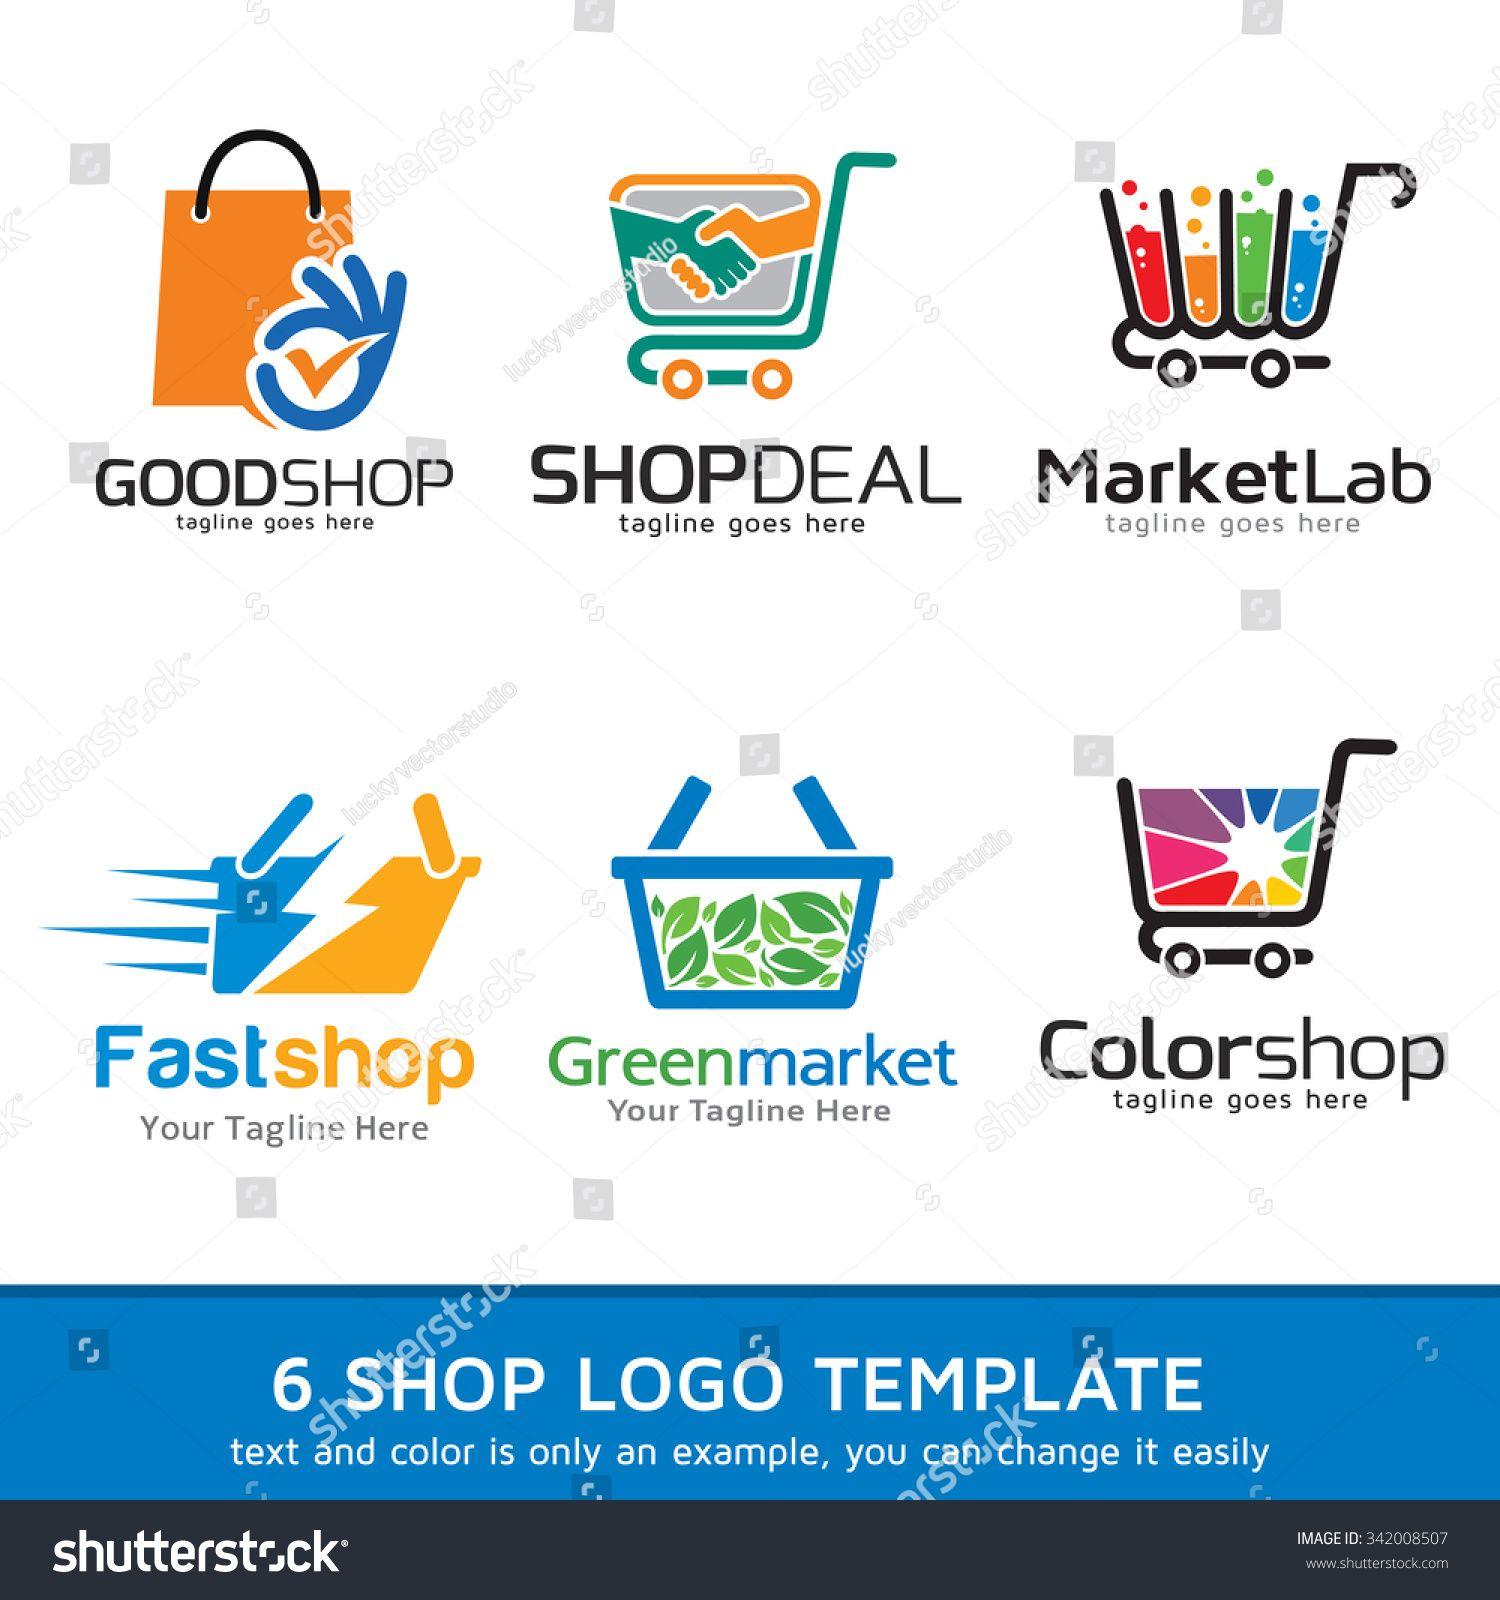 Retail Brand Logo - Resultado de imagem para market logo | Logo design | Pinterest ...